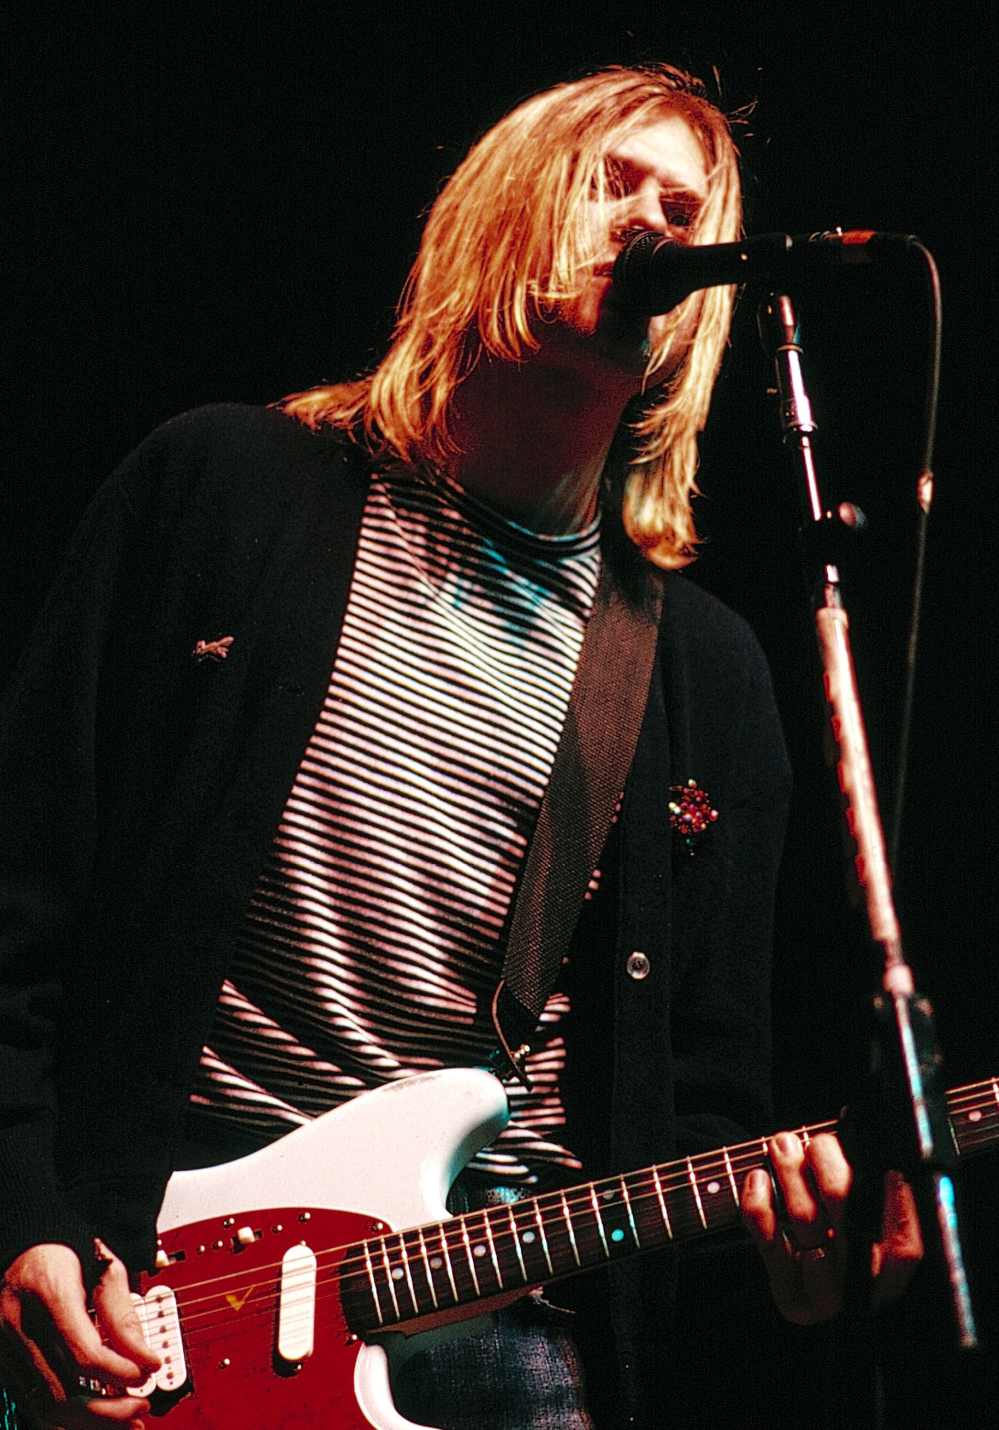 Kurt Cobain Green Cardigan Sold at Auction